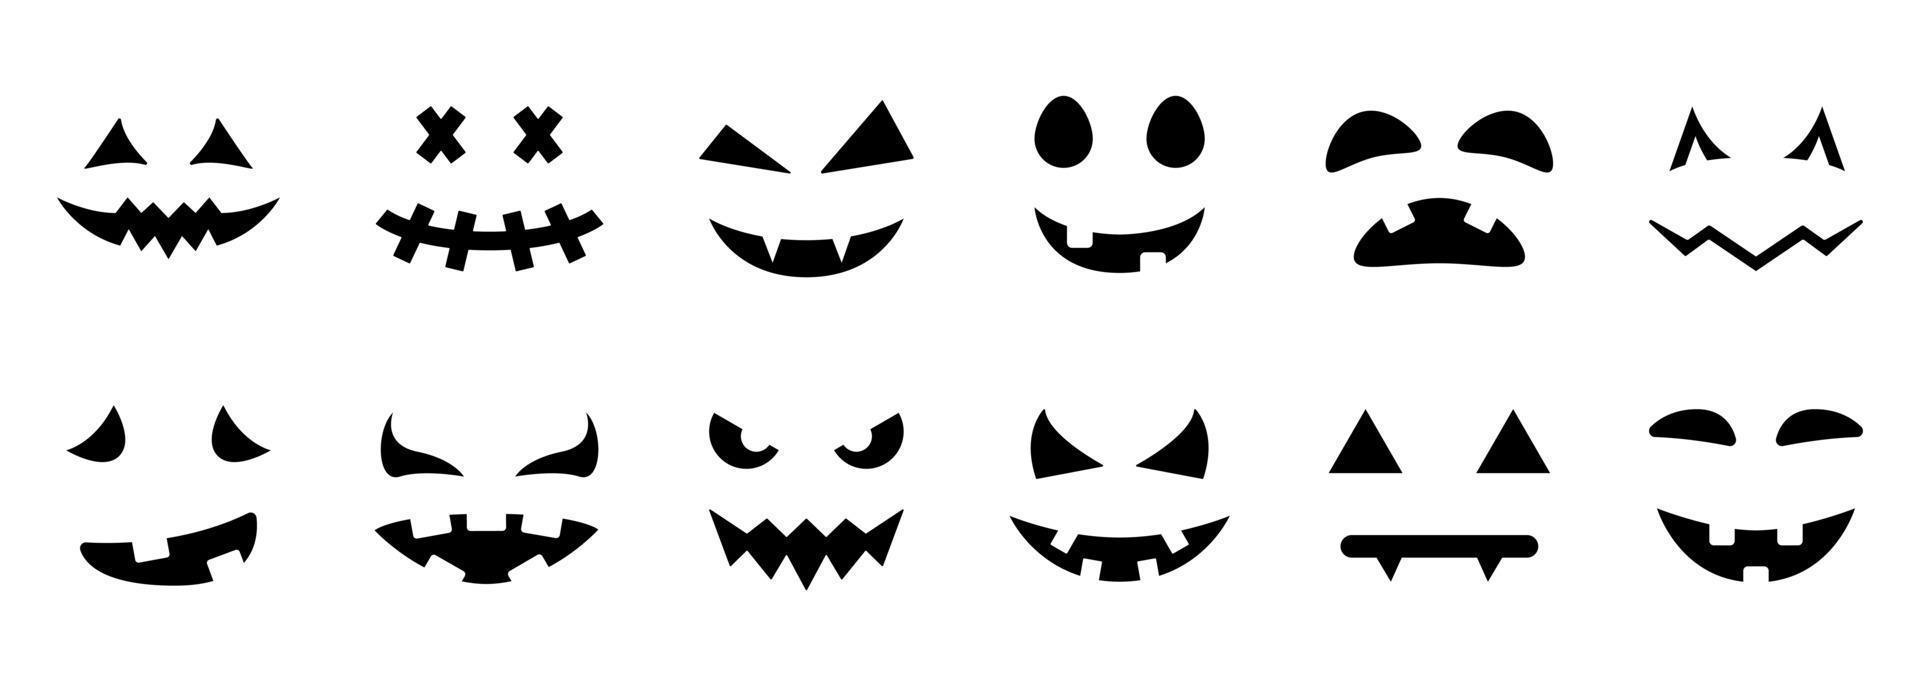 caretas assustadoras e engraçadas para o ícone de silhueta de abóbora de  halloween em fundo preto.